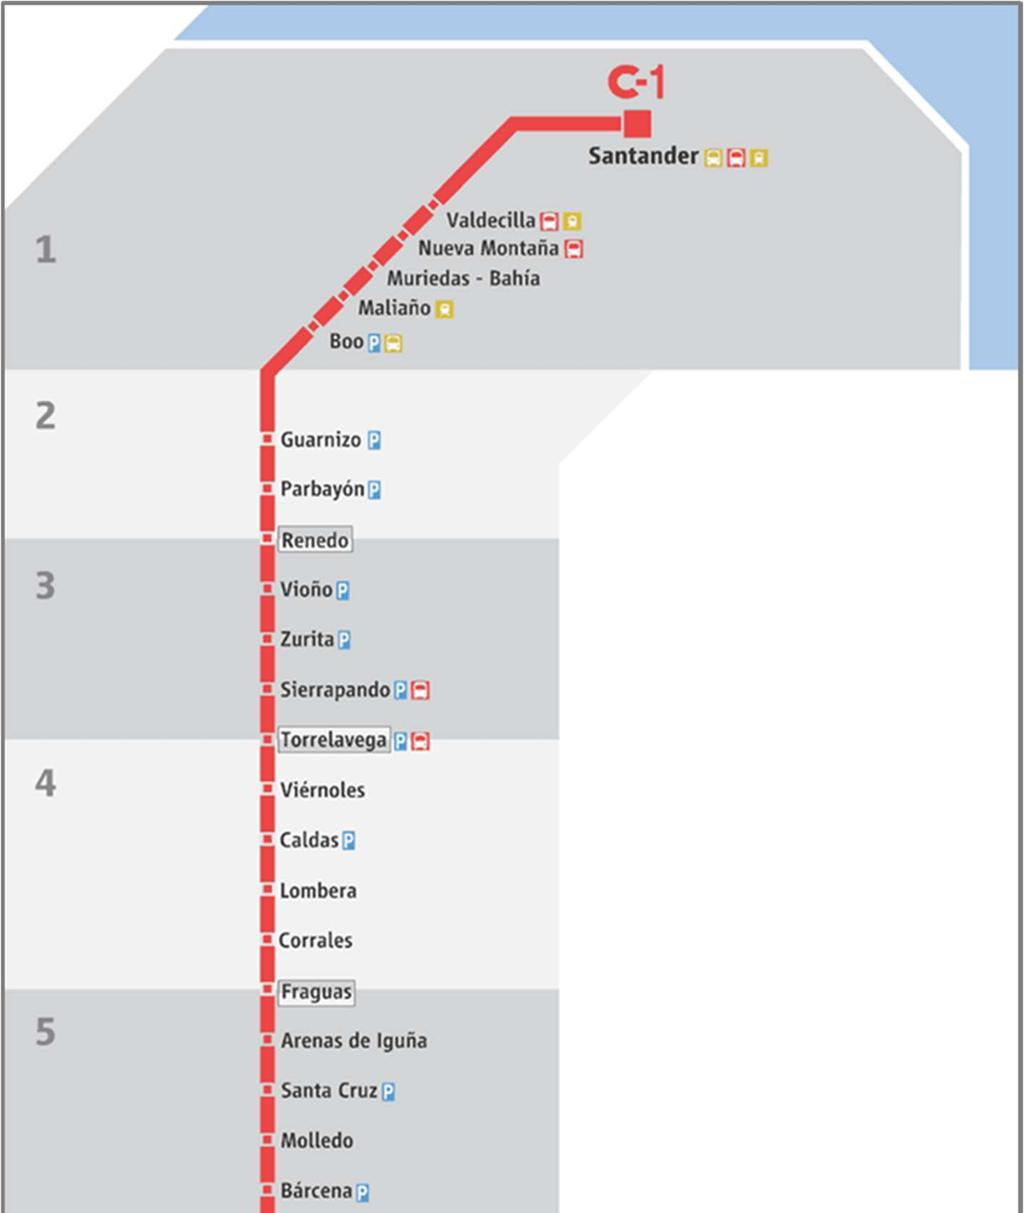 El plano general de la red de Cercanías del núcleo de Santander se muestra a continuación.